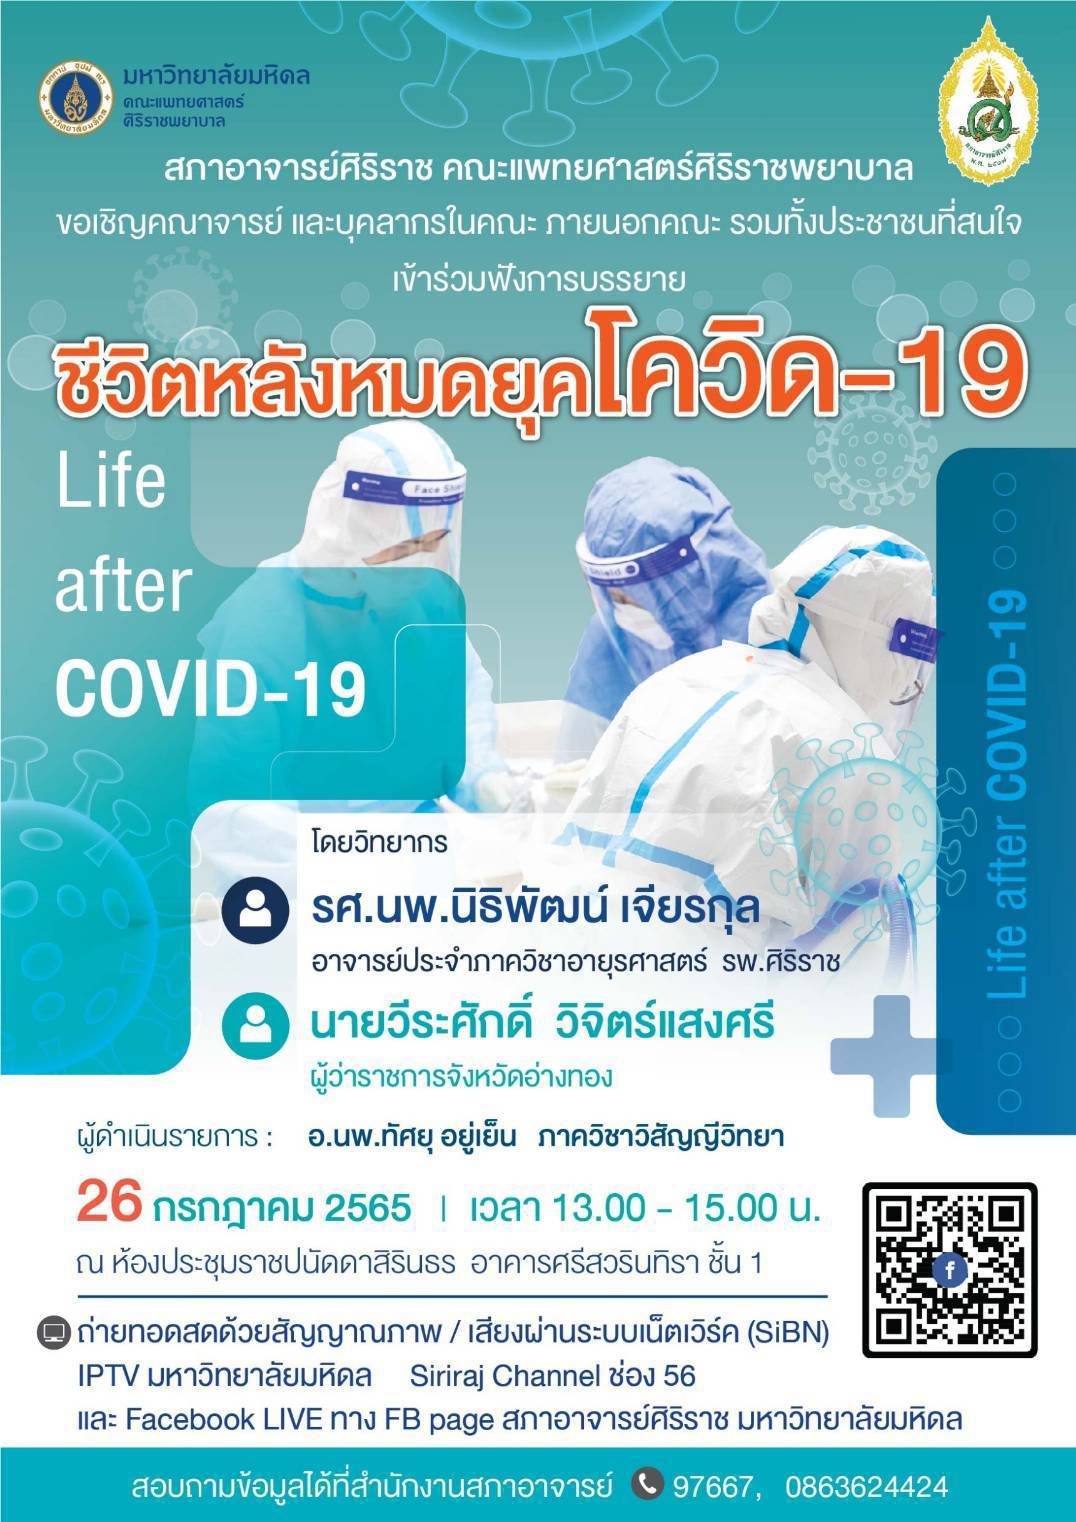 “ชีวิตหลังหมดยุคโควิด-19”(Life after COVID-19) @ คณะแพทยศาสตร์ศิริราชพยาบาล